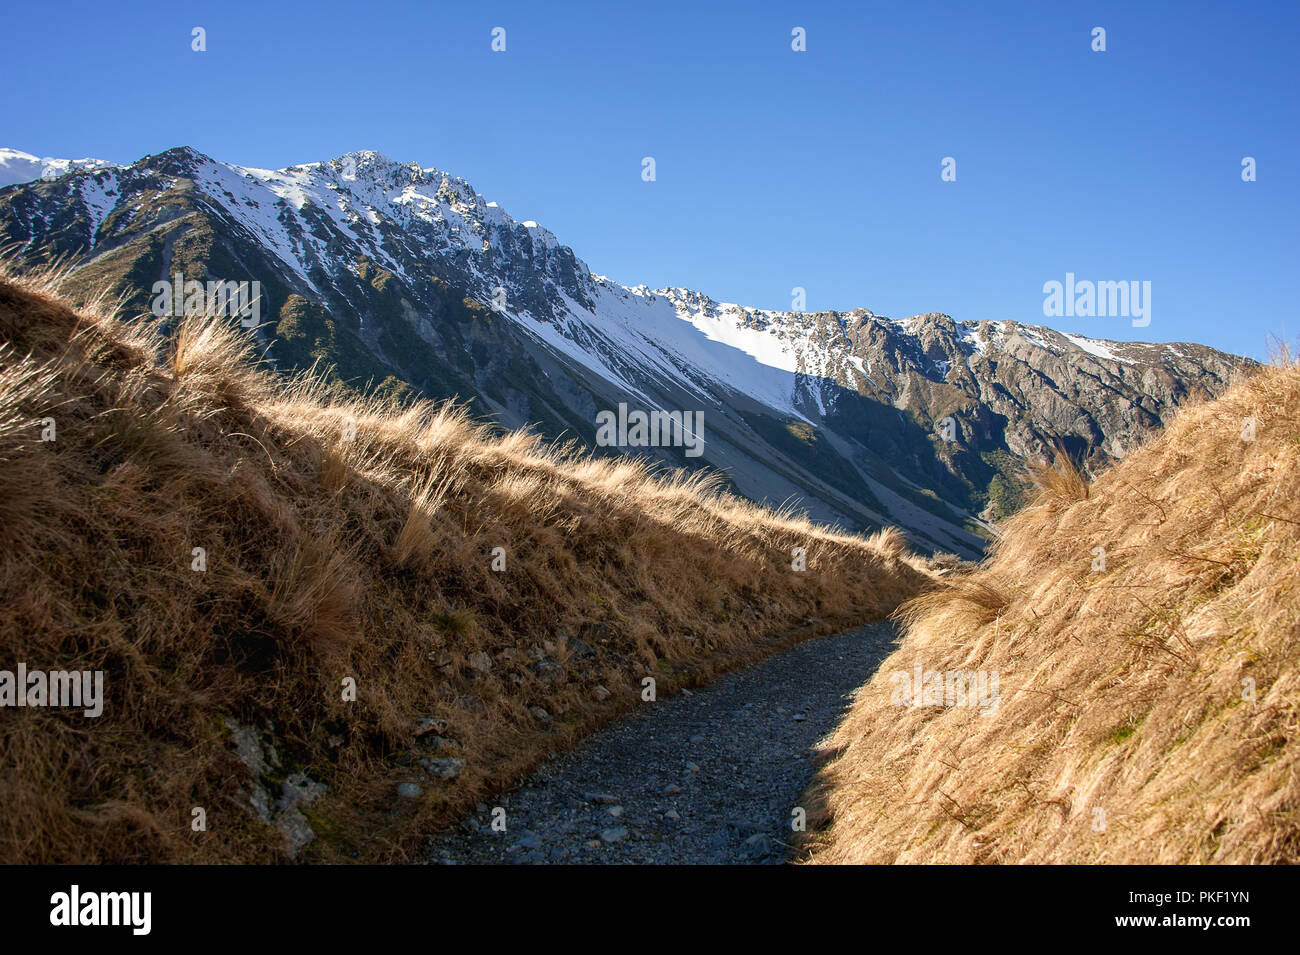 La Hooker Valley randonnées trai, Aoraki Mount Cookl. Contraste frappant entre ciel bleu profond, le blanc des montagnes enneigées et l'herbe d'or en premier plan Banque D'Images